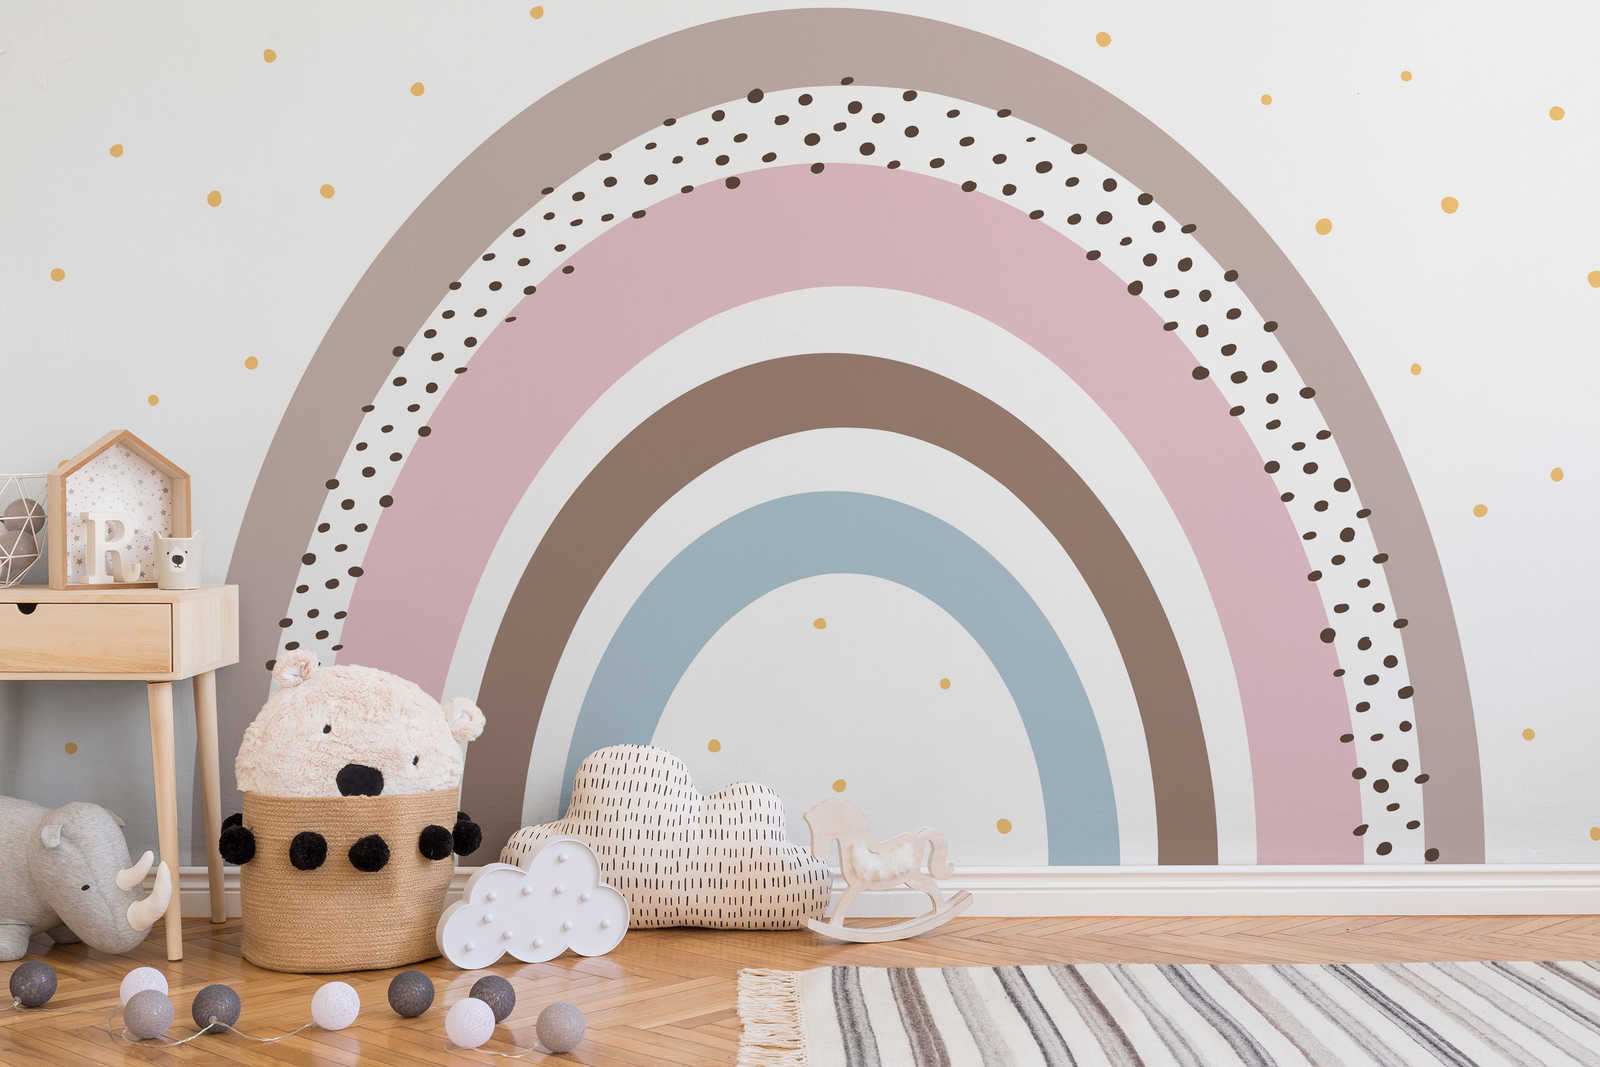             Fototapete Regenbogen mit Punkten für Babyzimmer
        